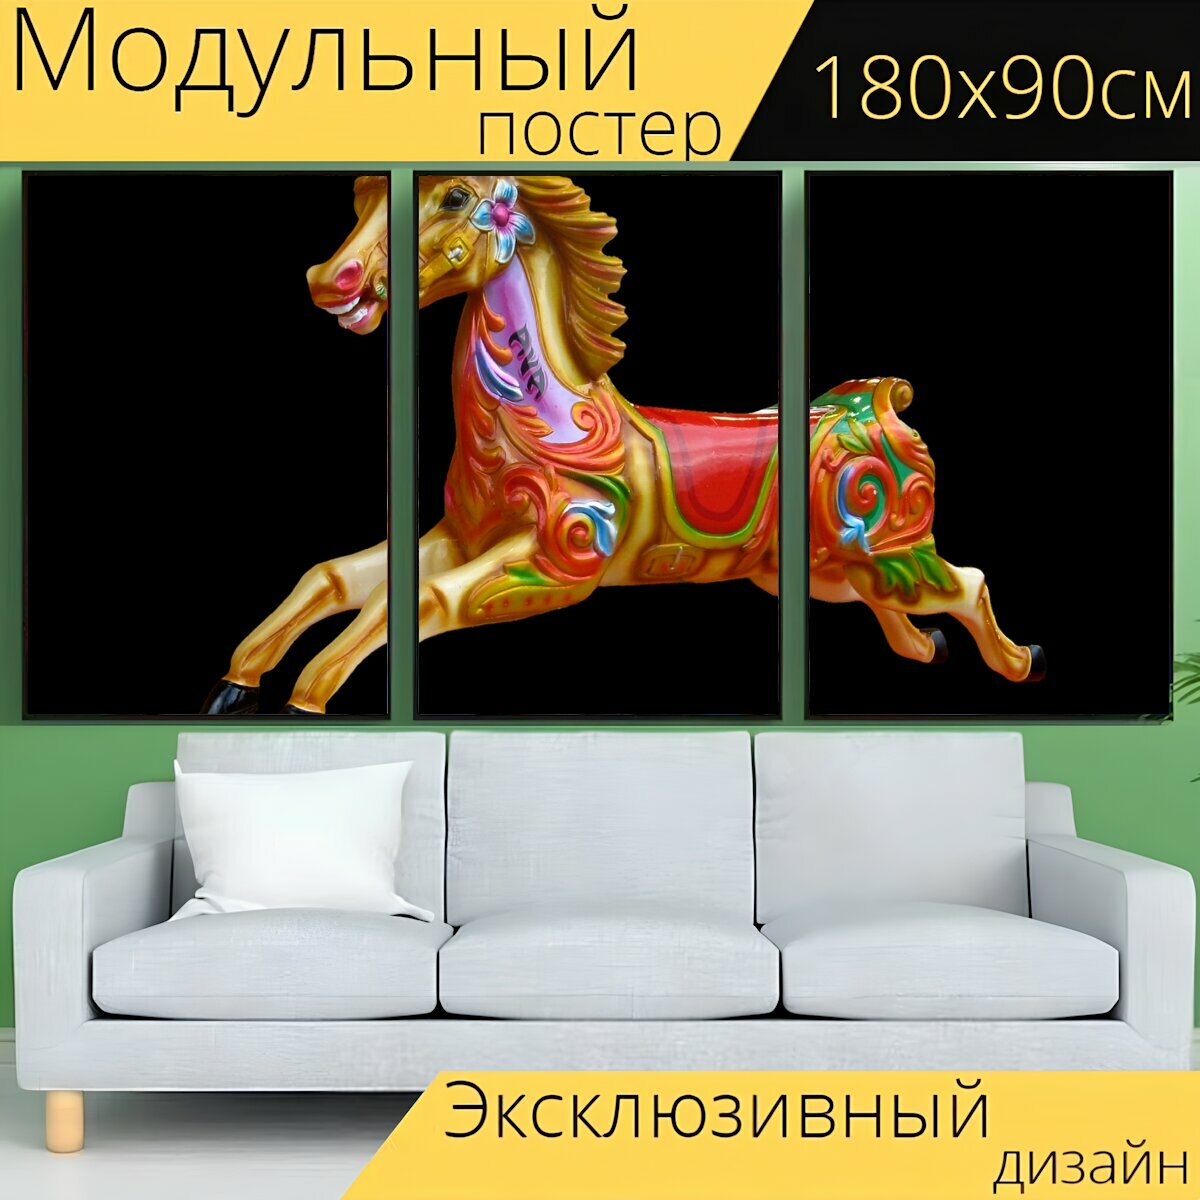 Модульный постер "Карусель лошадь, карусель, детская карусель" 180 x 90 см. для интерьера